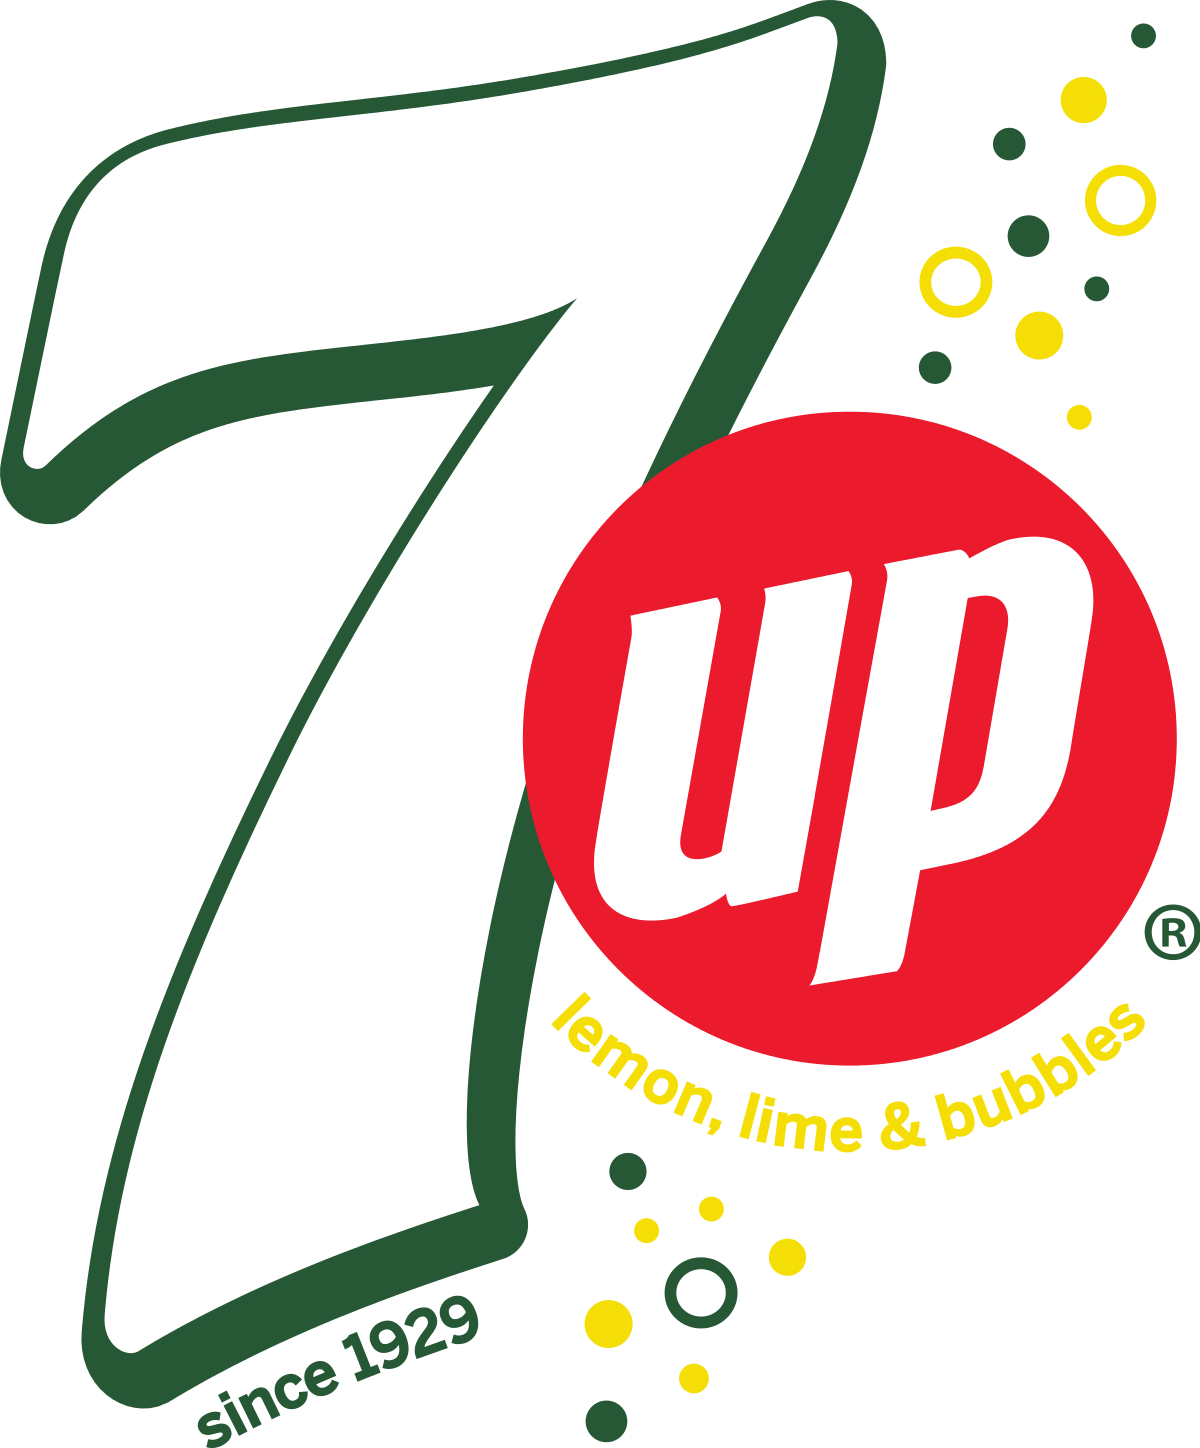 Drink Company Logo - 7 Up